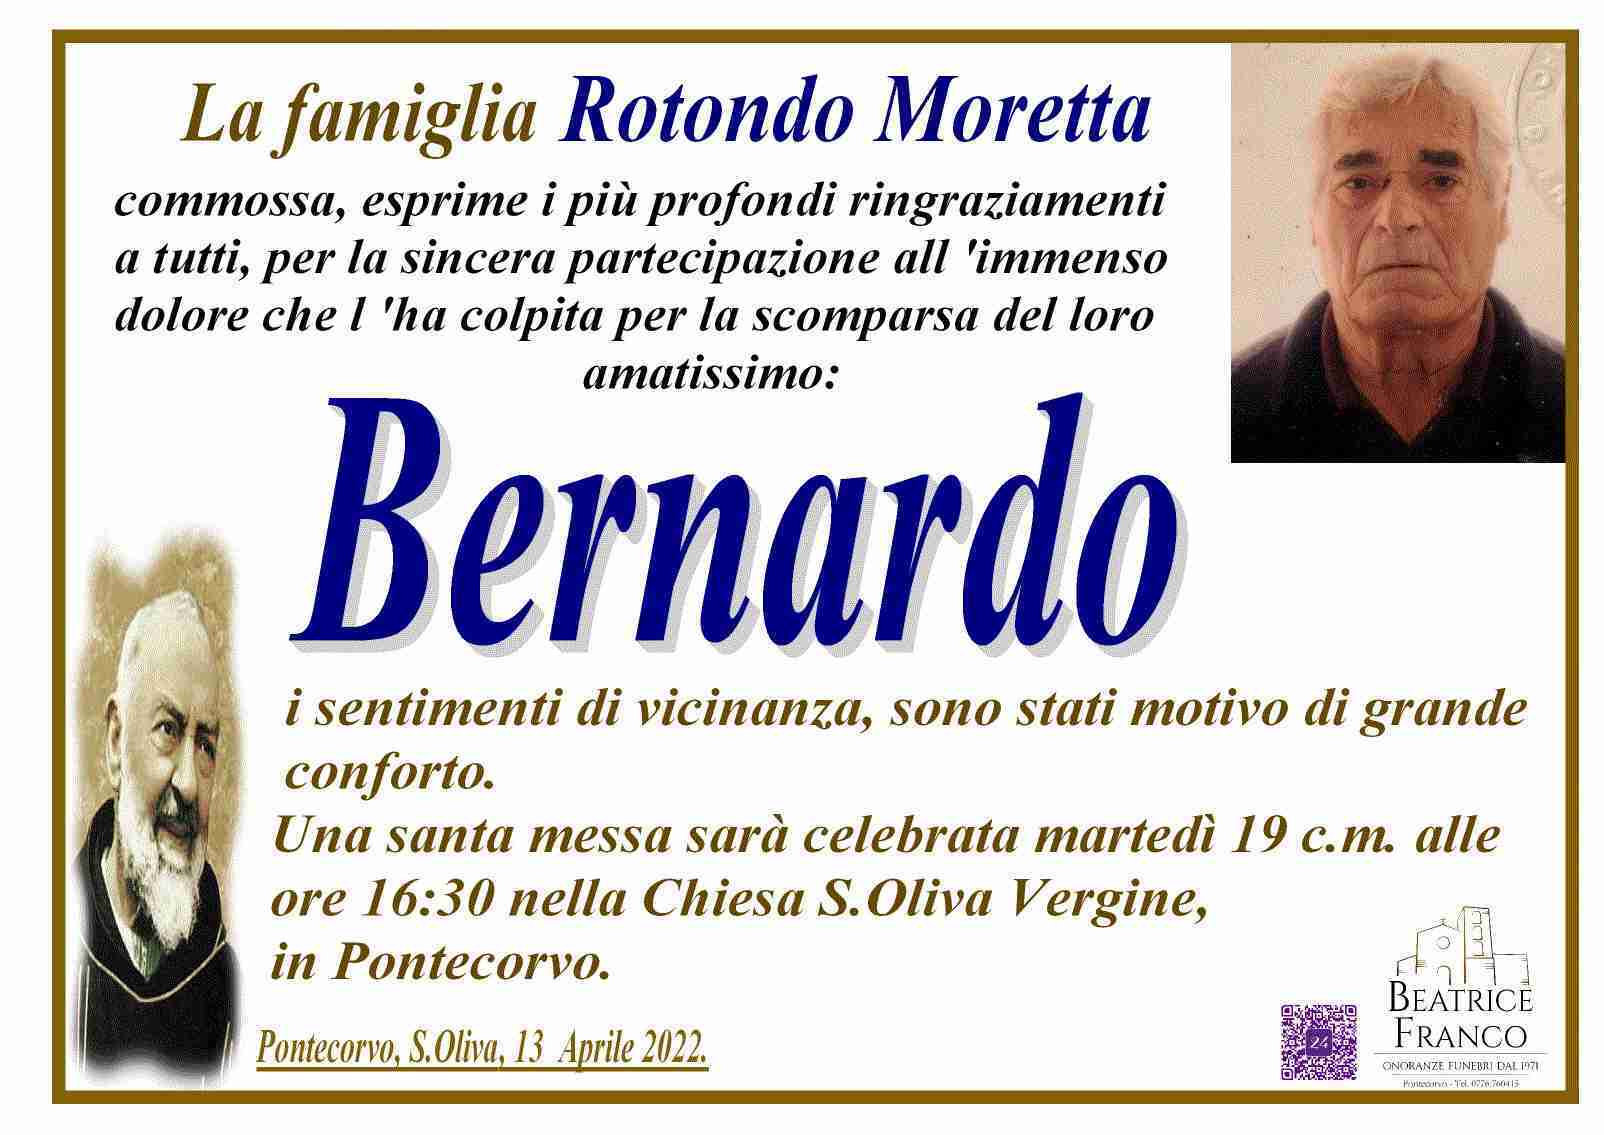 Bernardo Rotondo